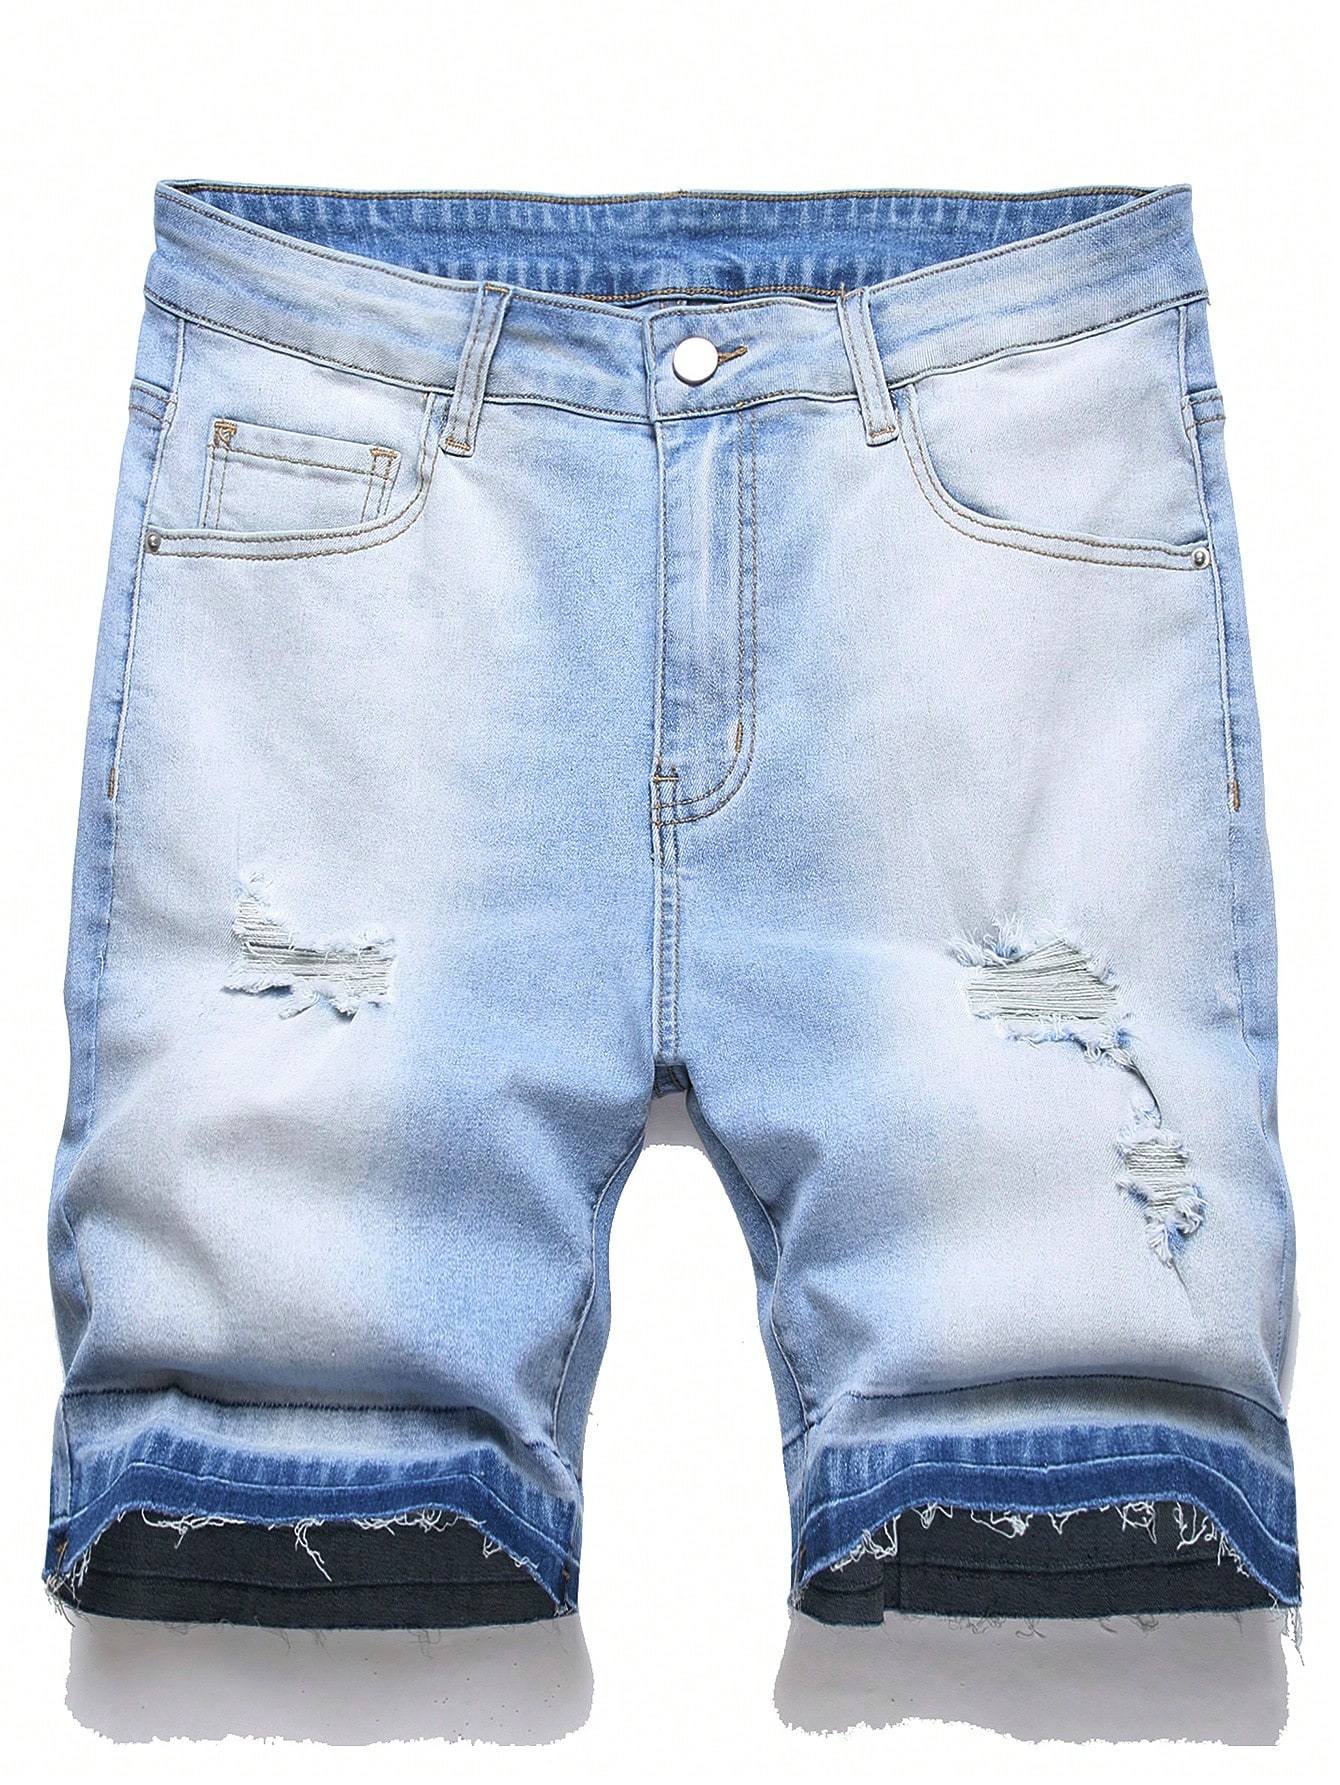 цена Мужские джинсовые шорты Manfinity EMRG с потертостями, легкая стирка